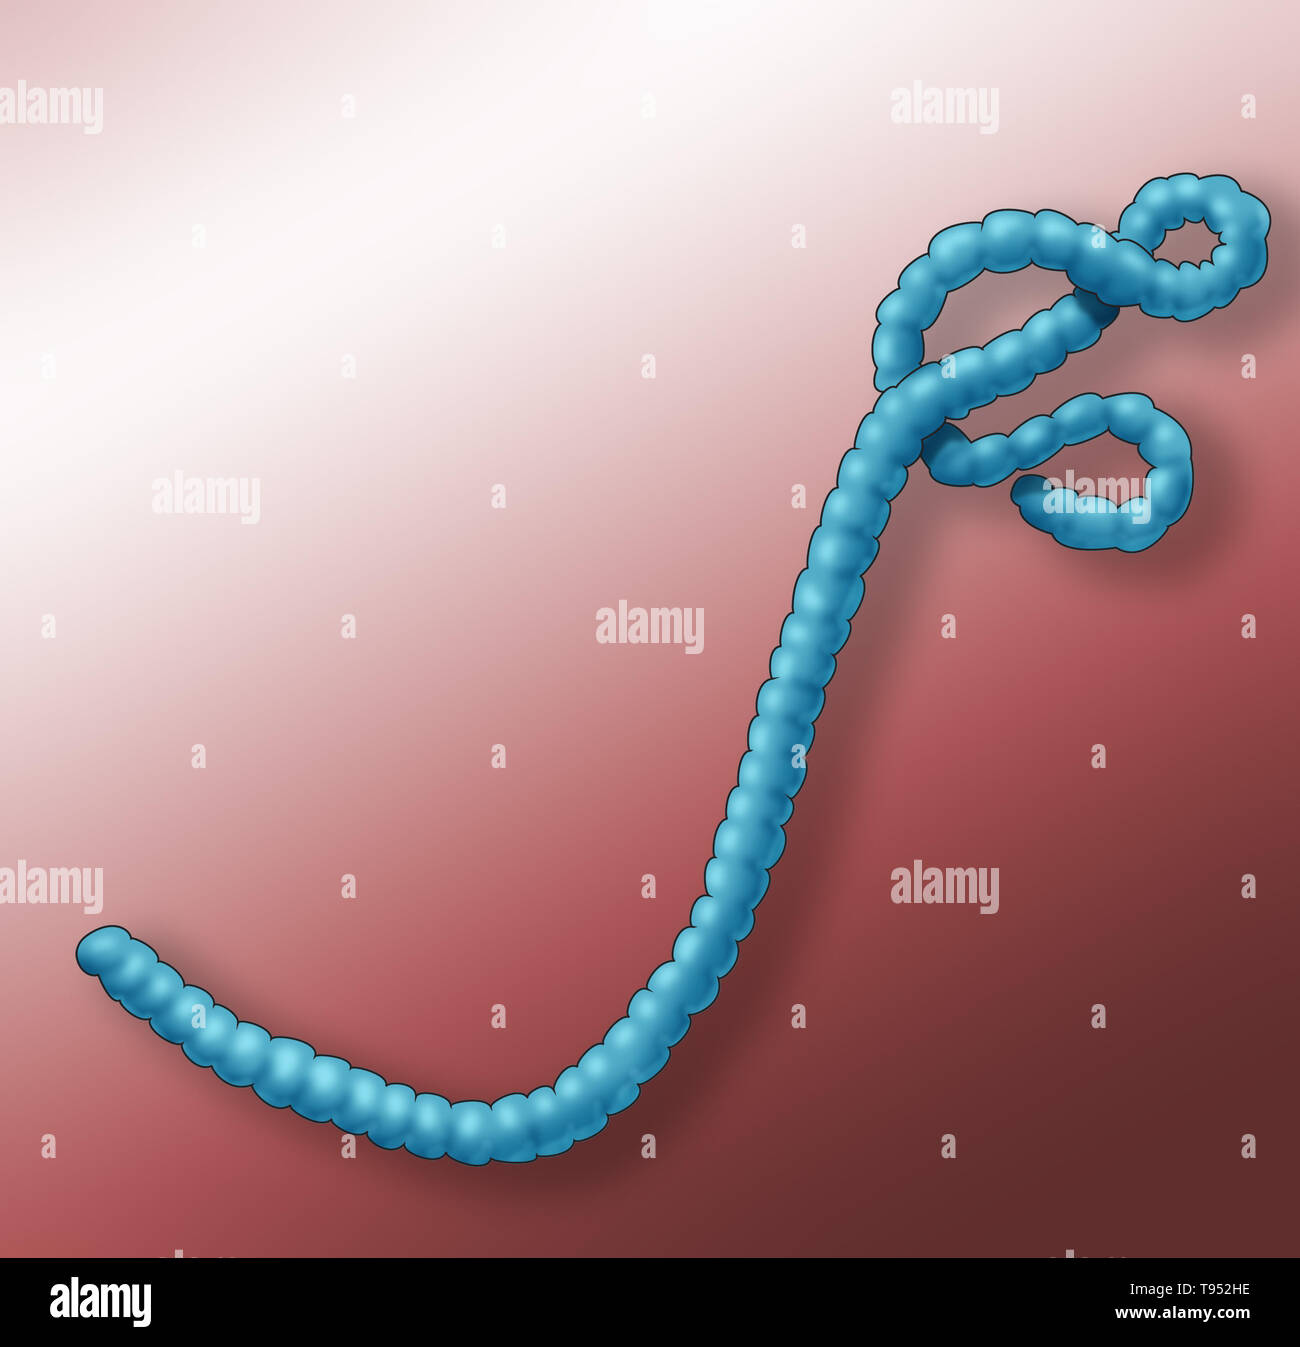 Illustrazione del virus Ebola. Il virus di Ebola provoca gravi e spesso fatali febbre emorragica in esseri umani e altri mammiferi, noto come ebola. Foto Stock